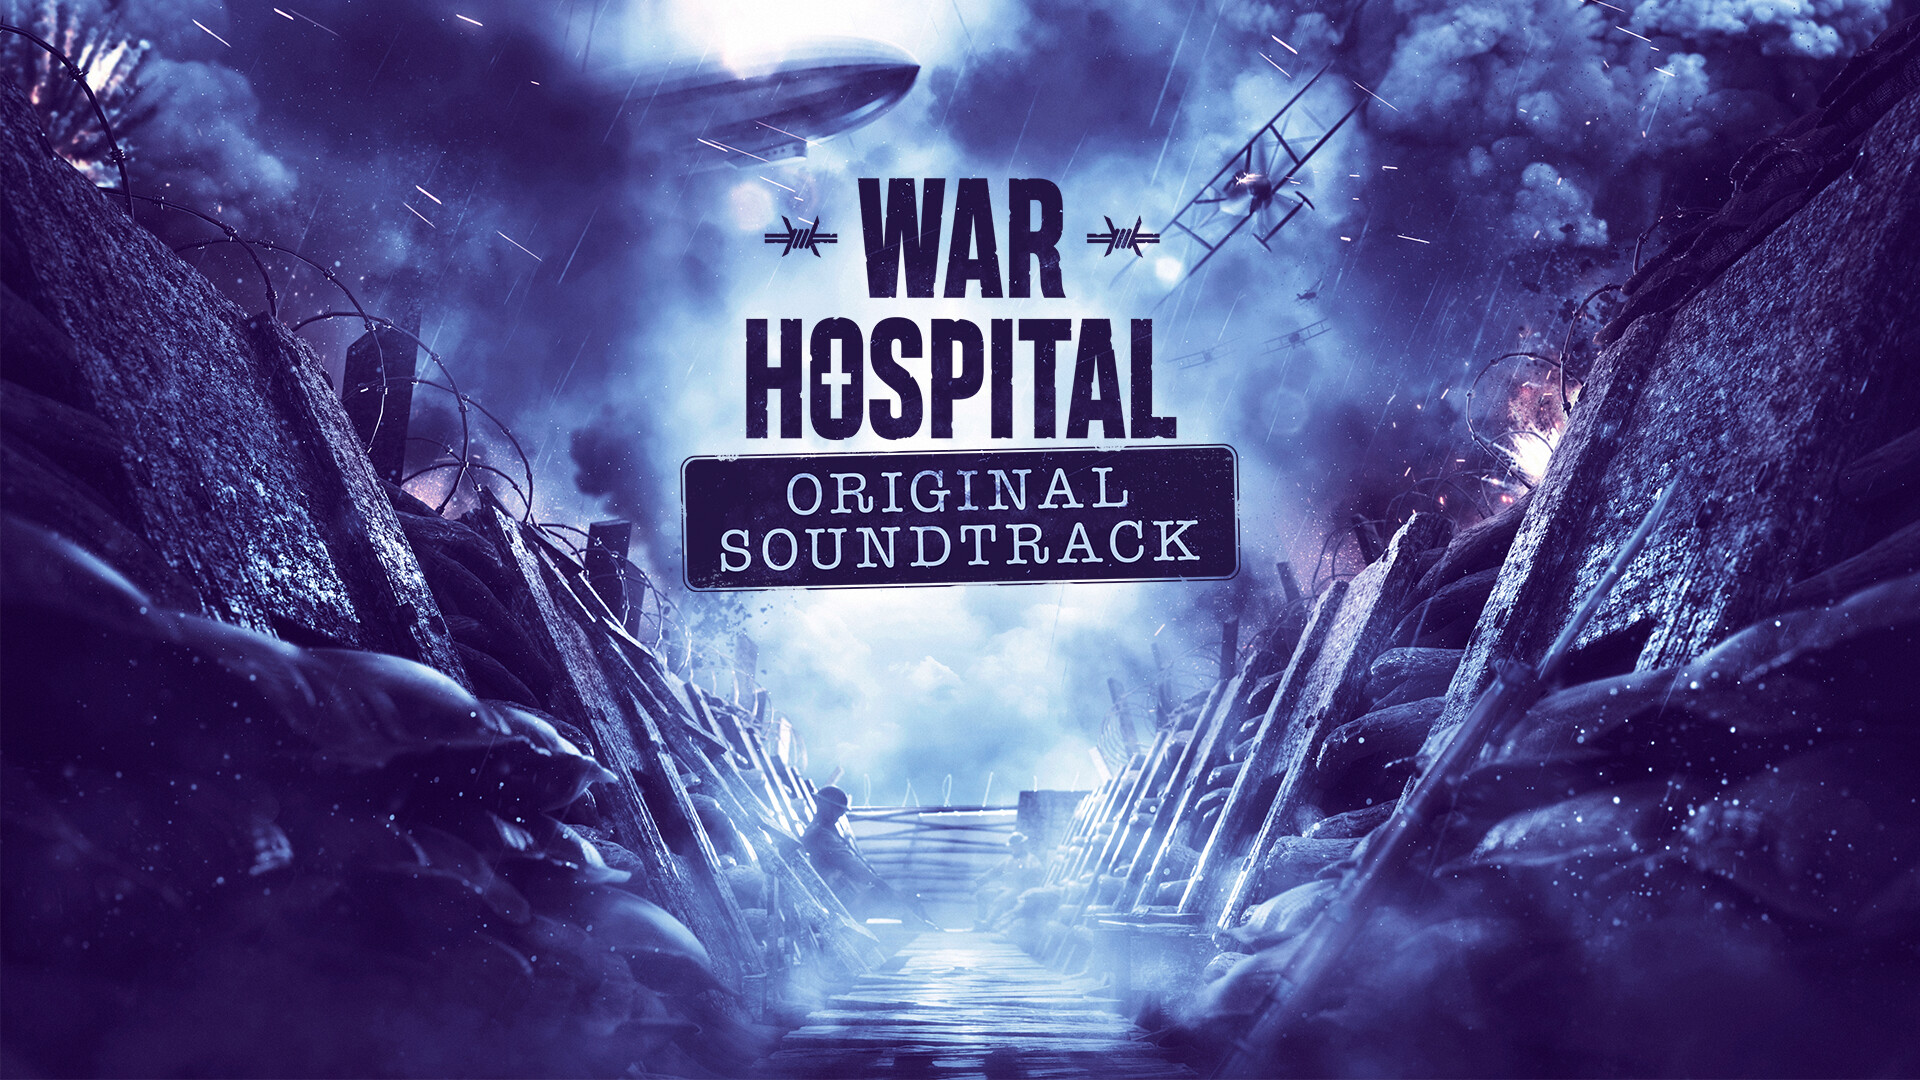 War Hospital - Original Soundtrack DLC Steam CD Key 3.38 USD